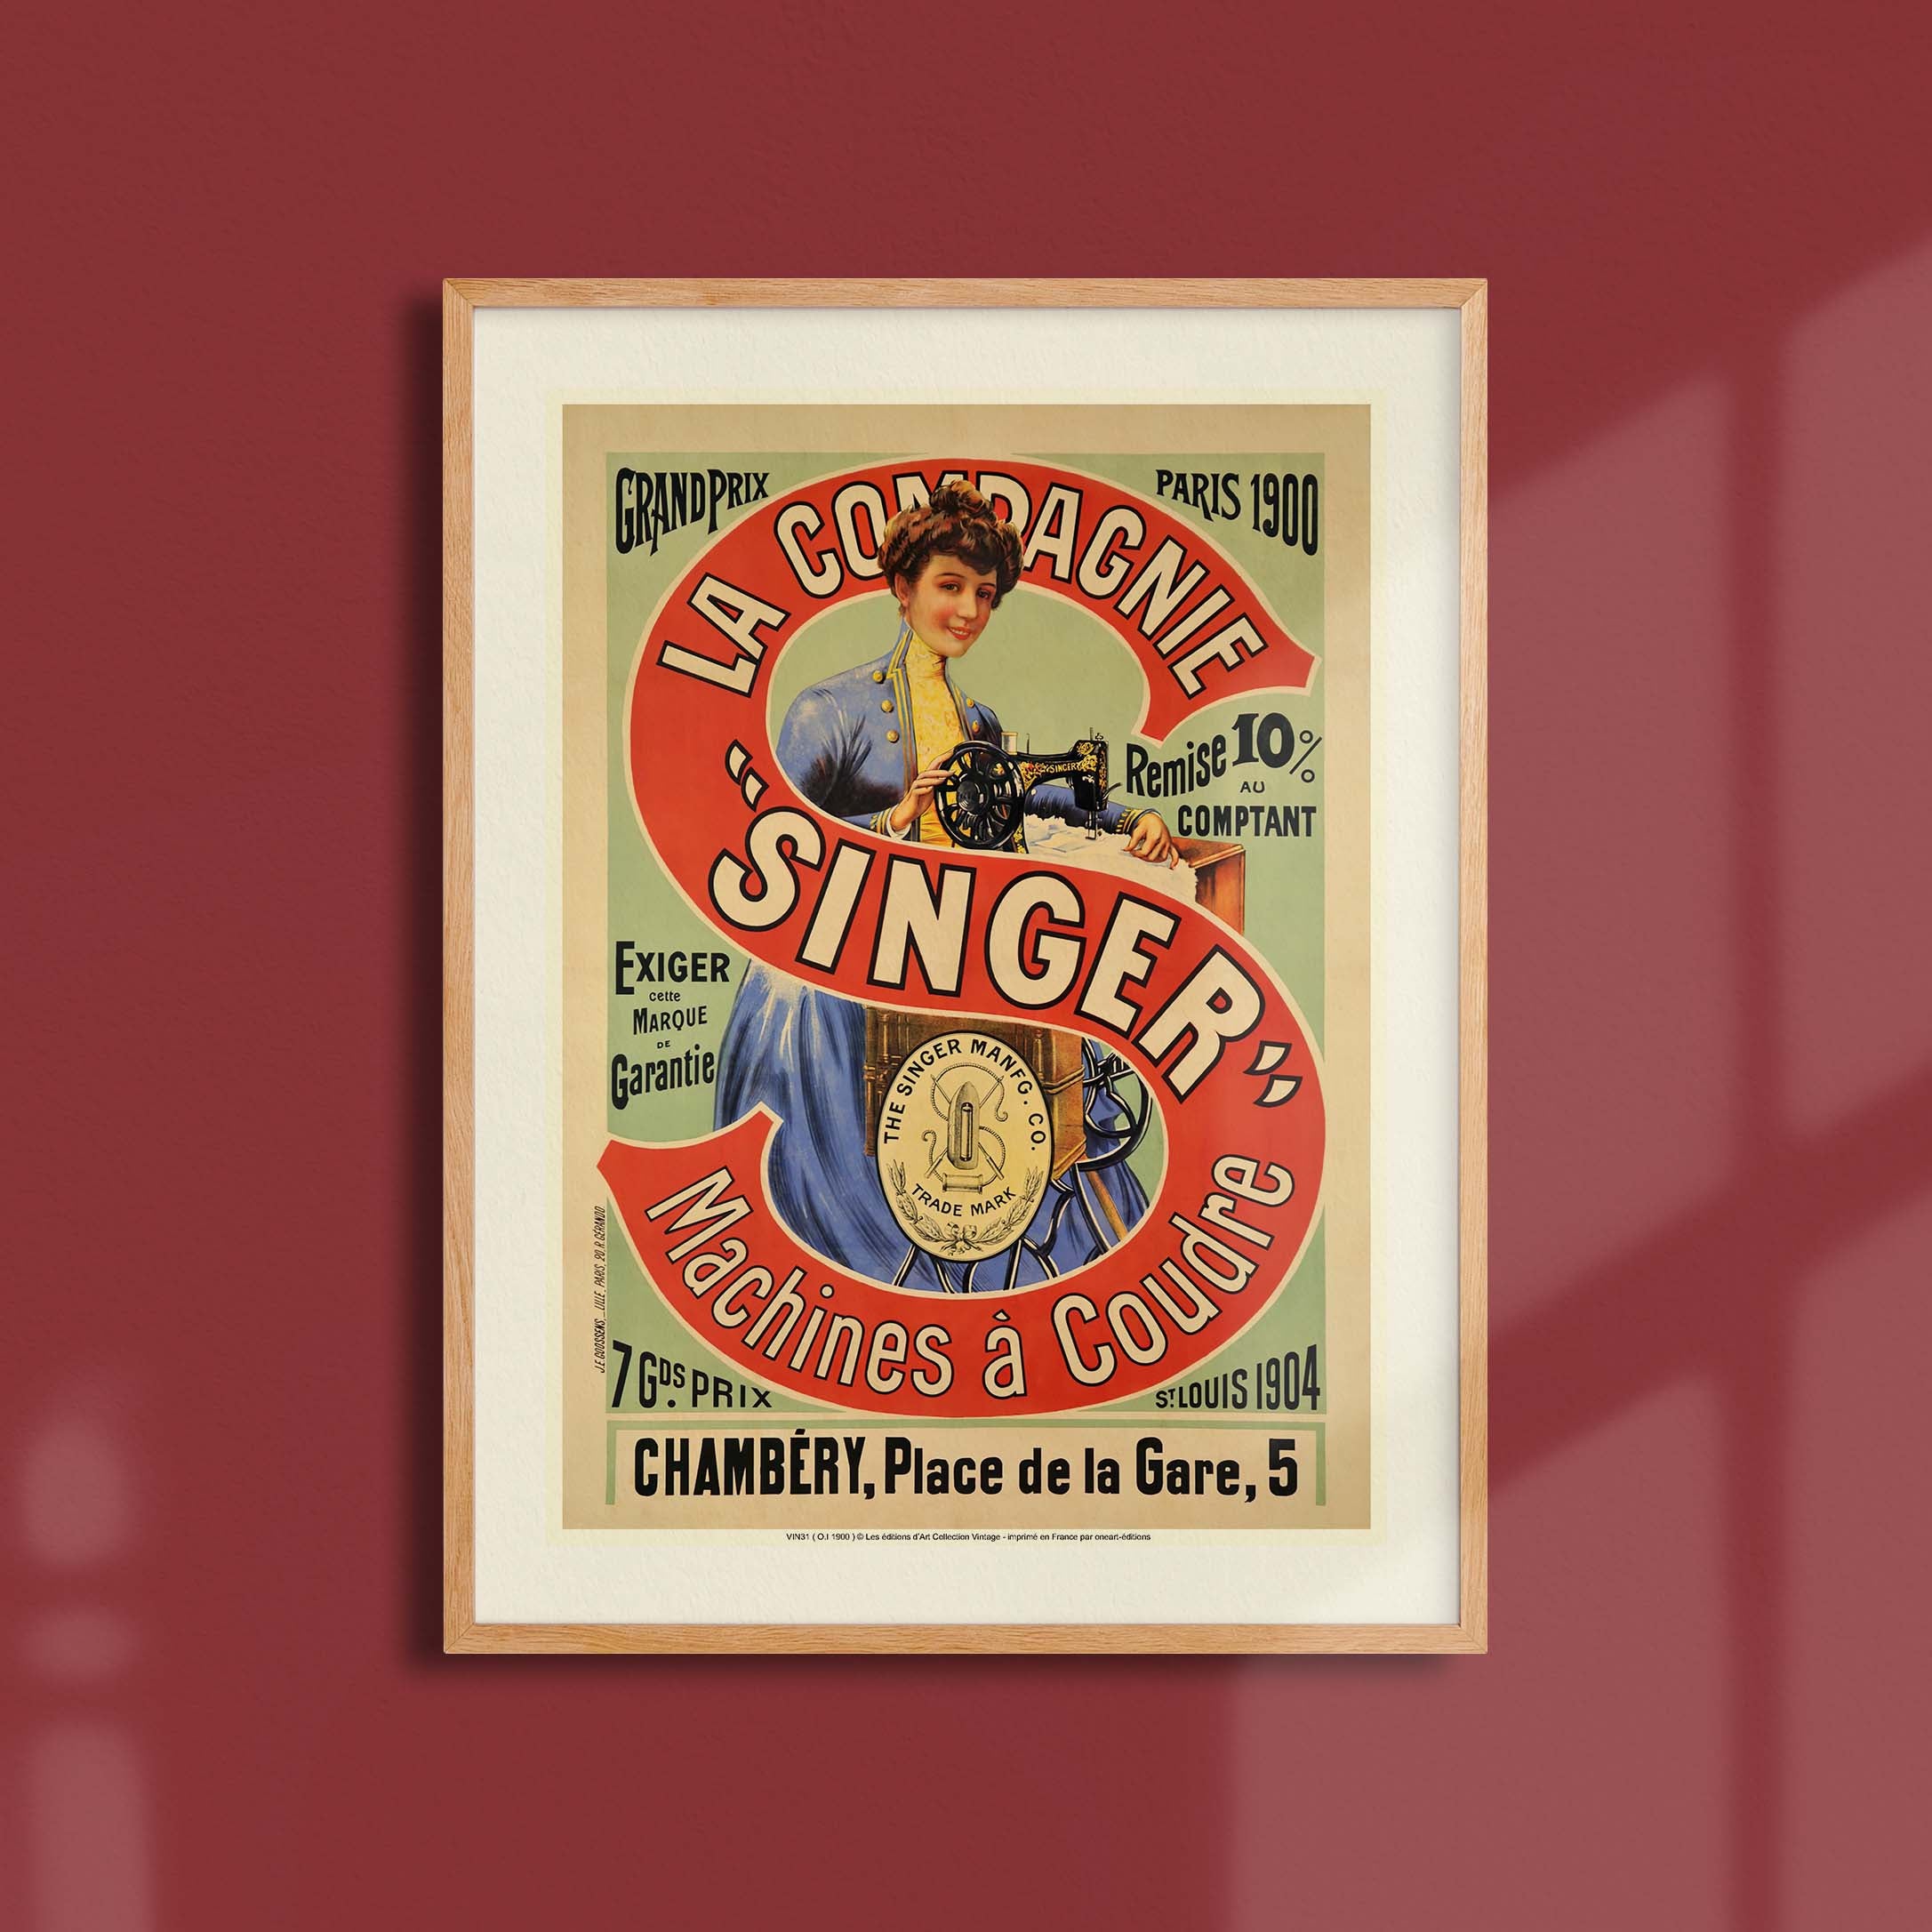 Affiche publicité vintage - Singer Machines à coudre-oneart.fr